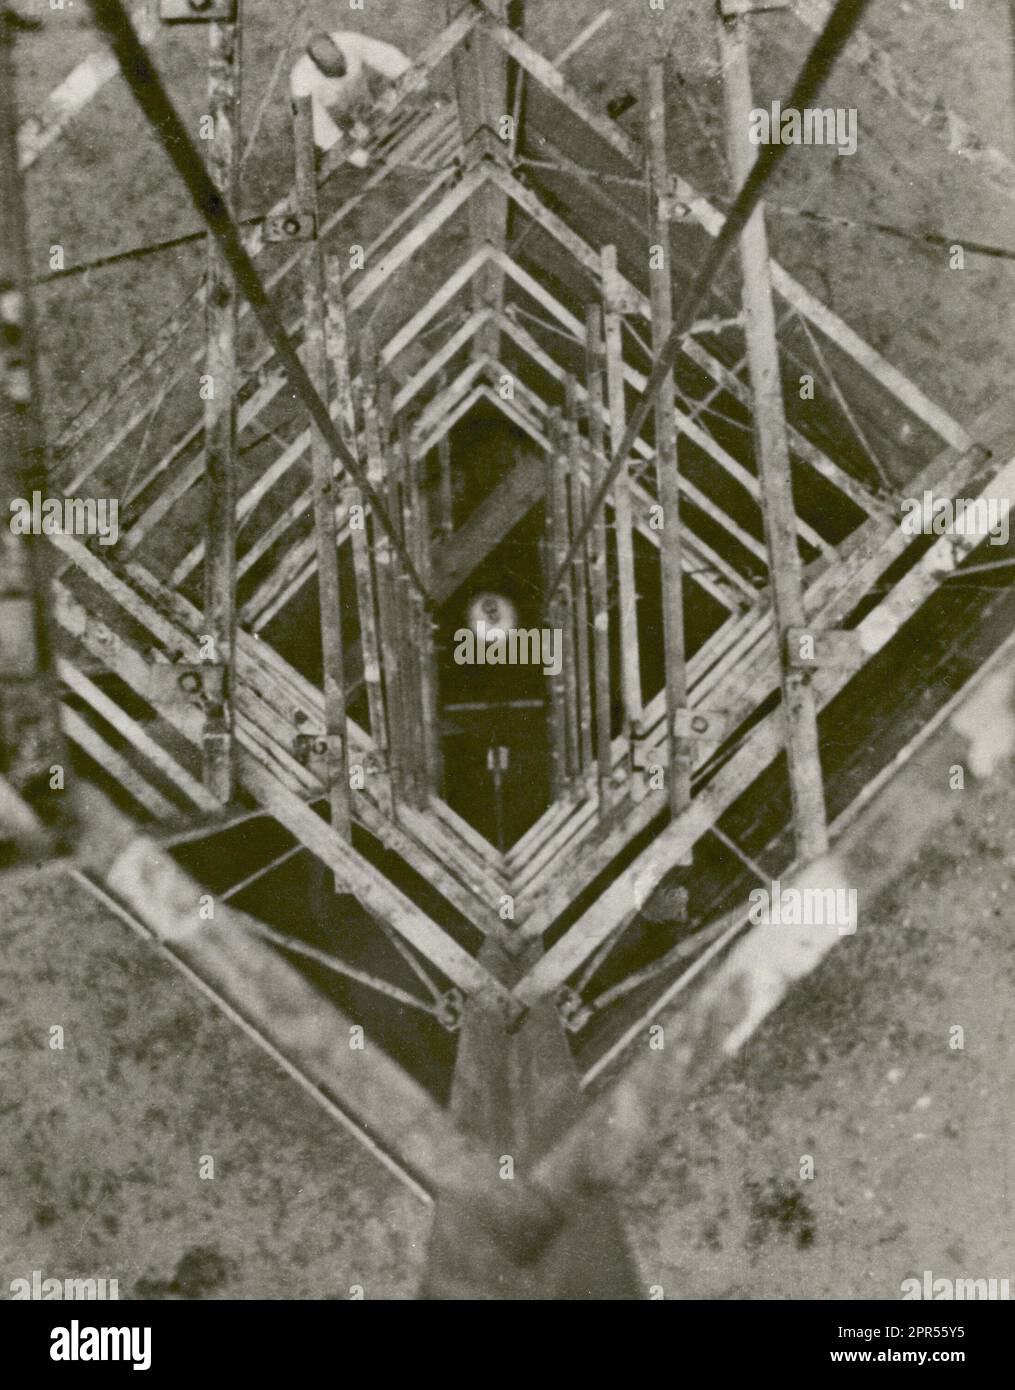 Col. Charles A. Lindbergh machte dieses Bild von Dr. Robert H. Goddards Rakete, die am 23. September 1935 in Roswell, New Mexico, den Startturm hinunterblickt. 1935 startete Goddard die A-Serie von Tests an Raketen, die mit einer kreisyro-gesteuerten Sprengfahne hergestellt wurden, die die Rakete während des Flugs stabilisierte. Dr. Goddard wurde als Vater der amerikanischen Rocketrie und als einer der Pioniere in der theoretischen Erforschung des Weltraums anerkannt. Sein Traum war die Eroberung der oberen Atmosphäre und letztlich des Weltraums durch den Raketenantrieb. Als die Vereinigten Staaten begannen, sich auf die Eroberung vorzubereiten o Stockfoto